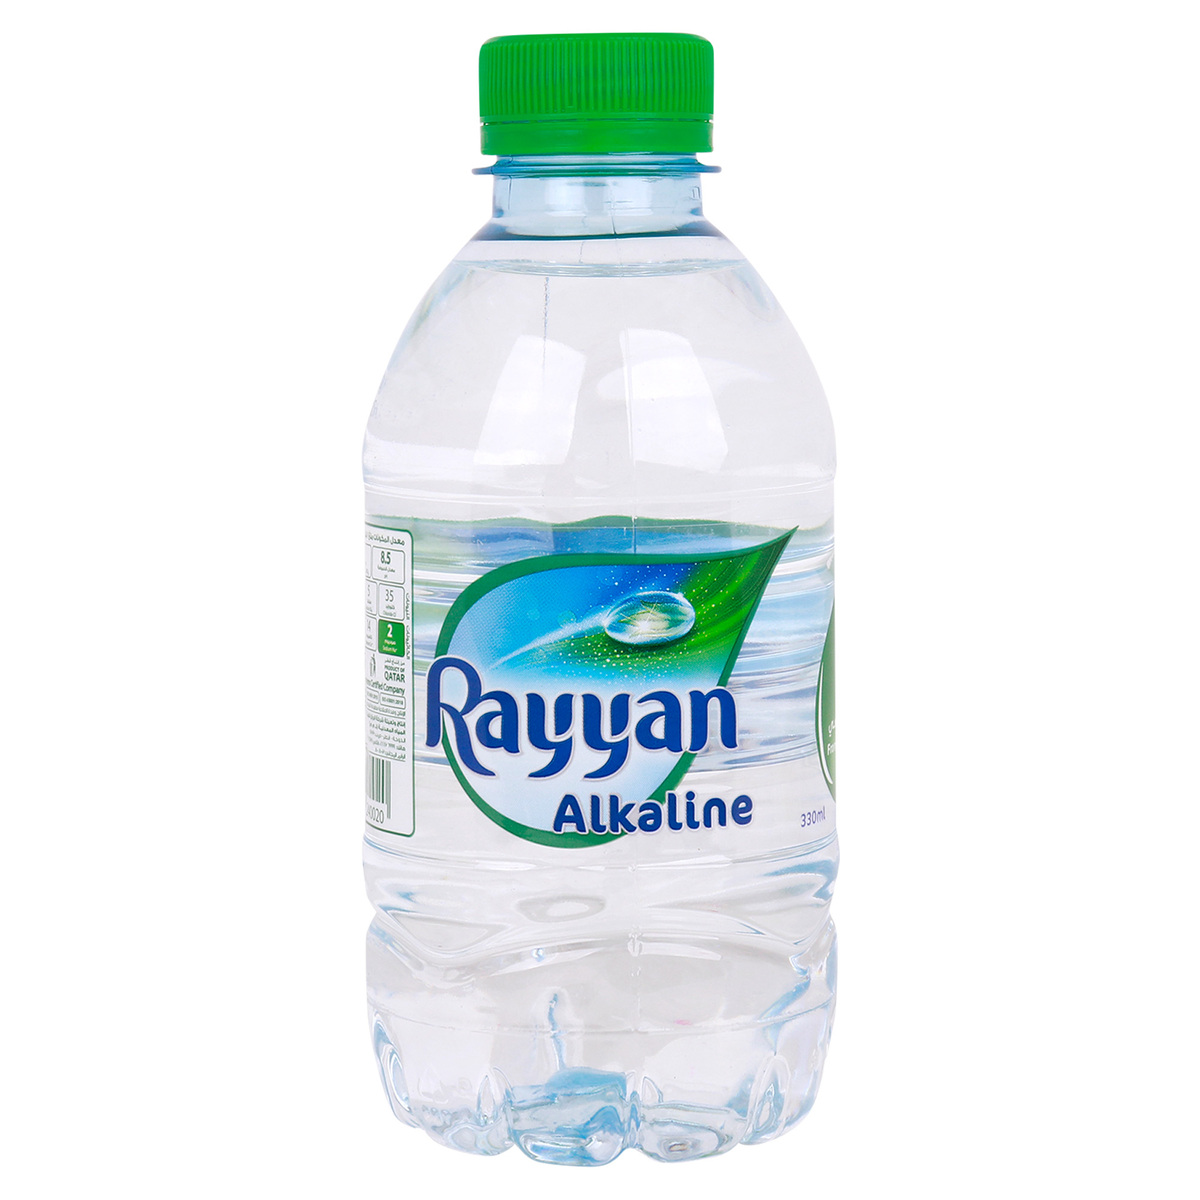 Rayyan Alkaline Natural Water 12 x 330ml